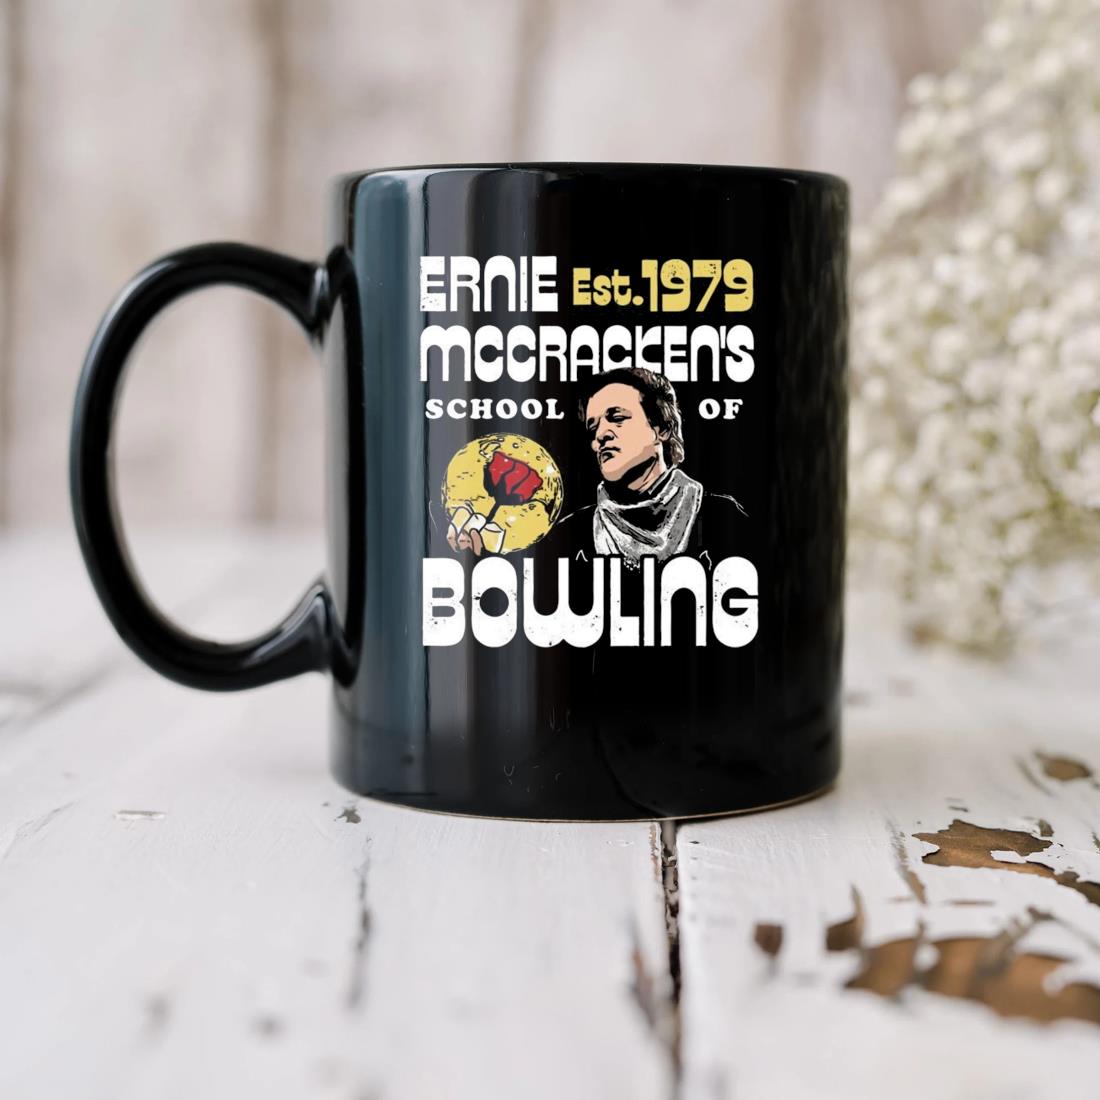 Ernie Mccracken's School Of Bowling Est 1979 Mug